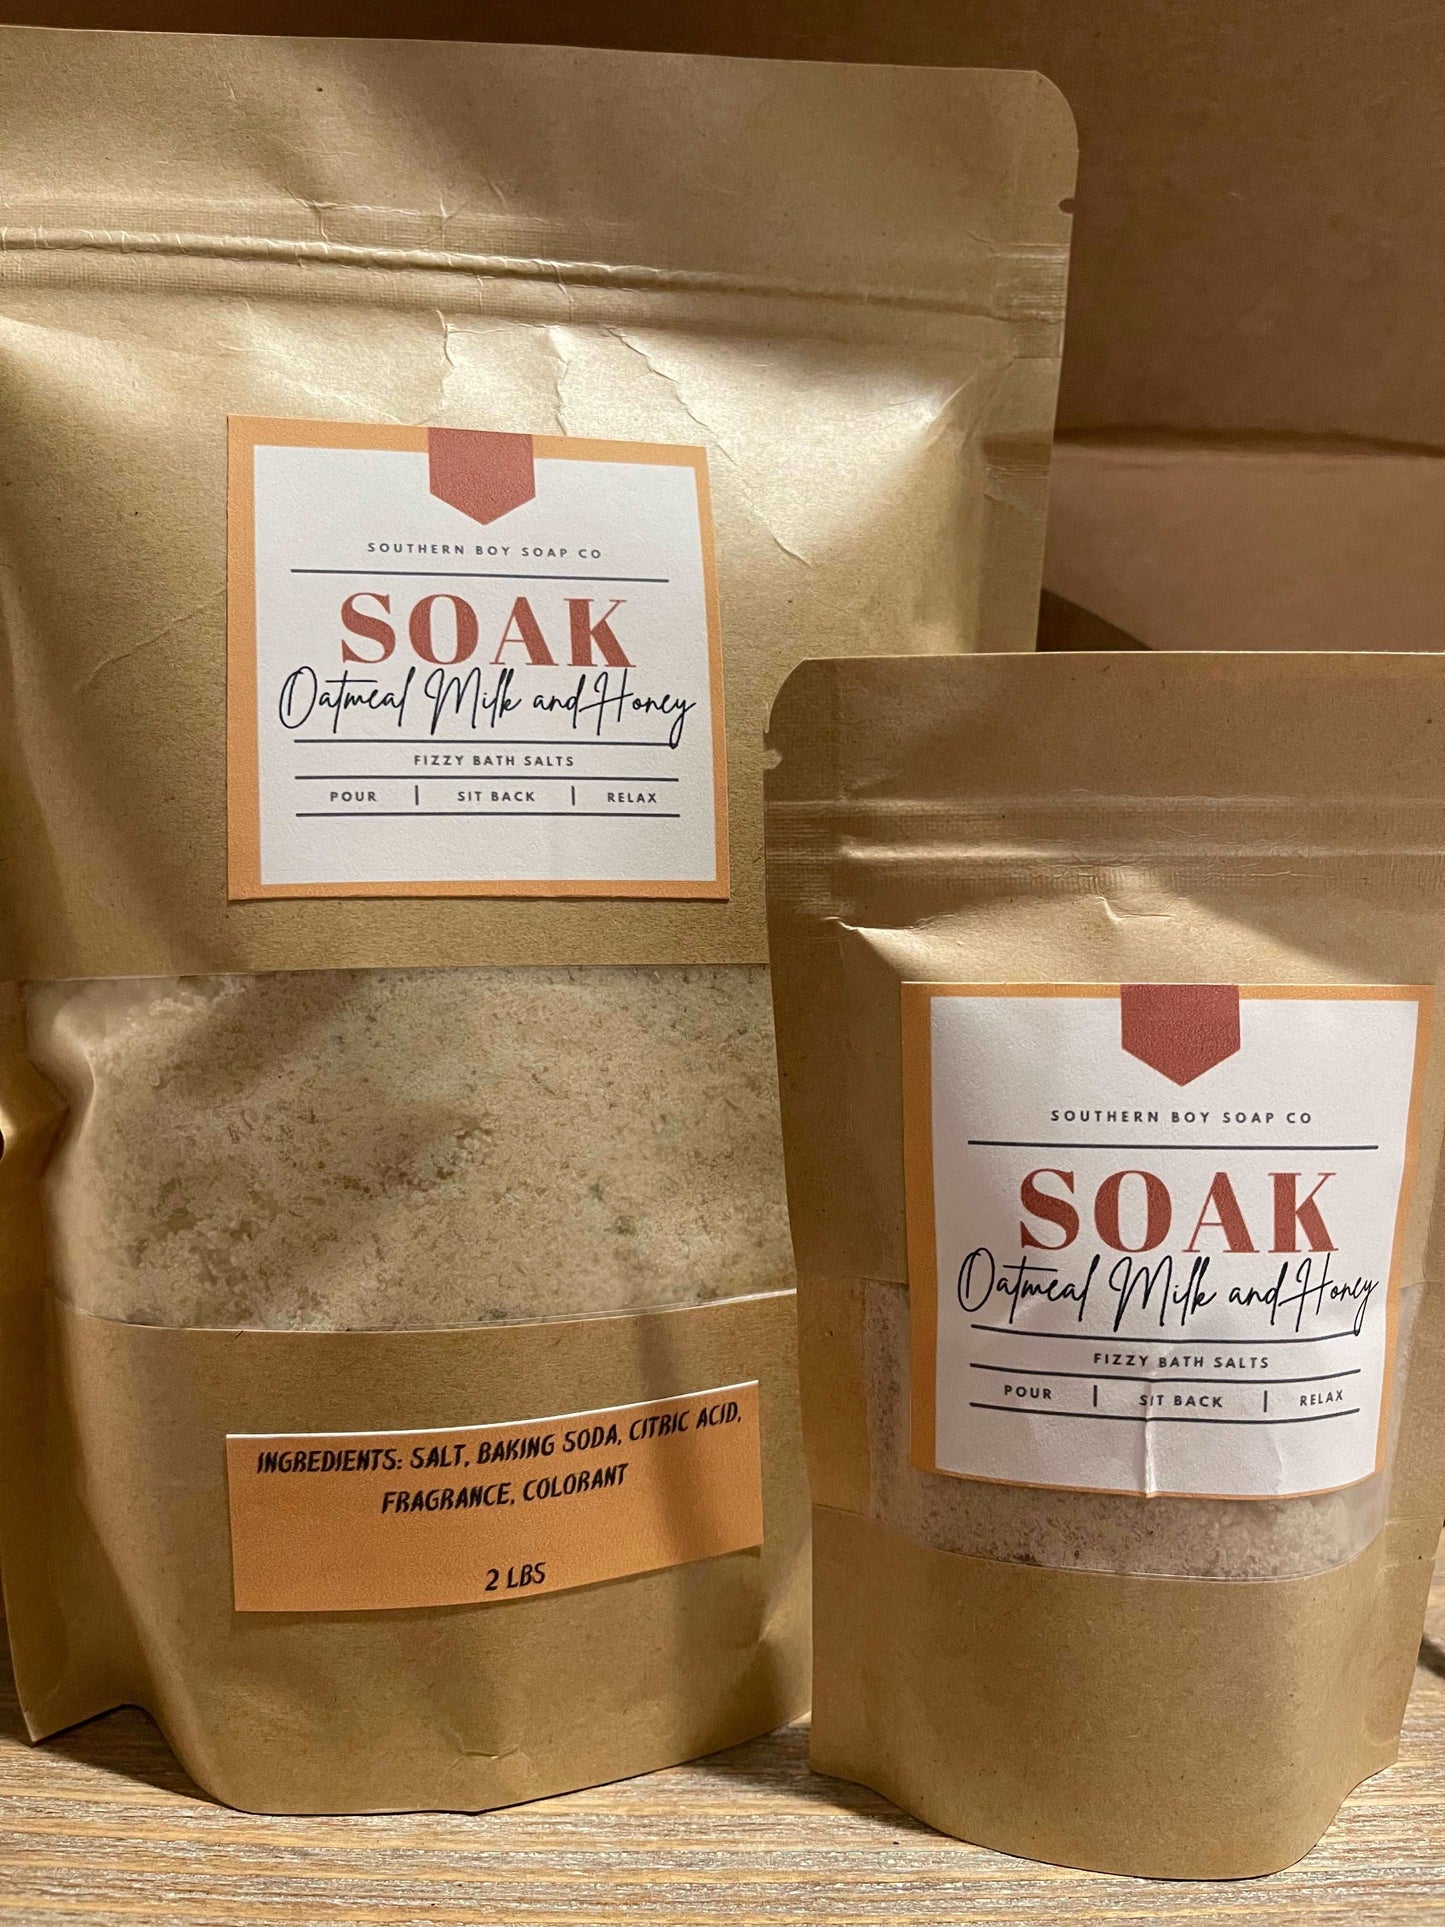 Oatmeal Milk And Honey Bath Salt Soak - SouthernBoySoapCo LLC